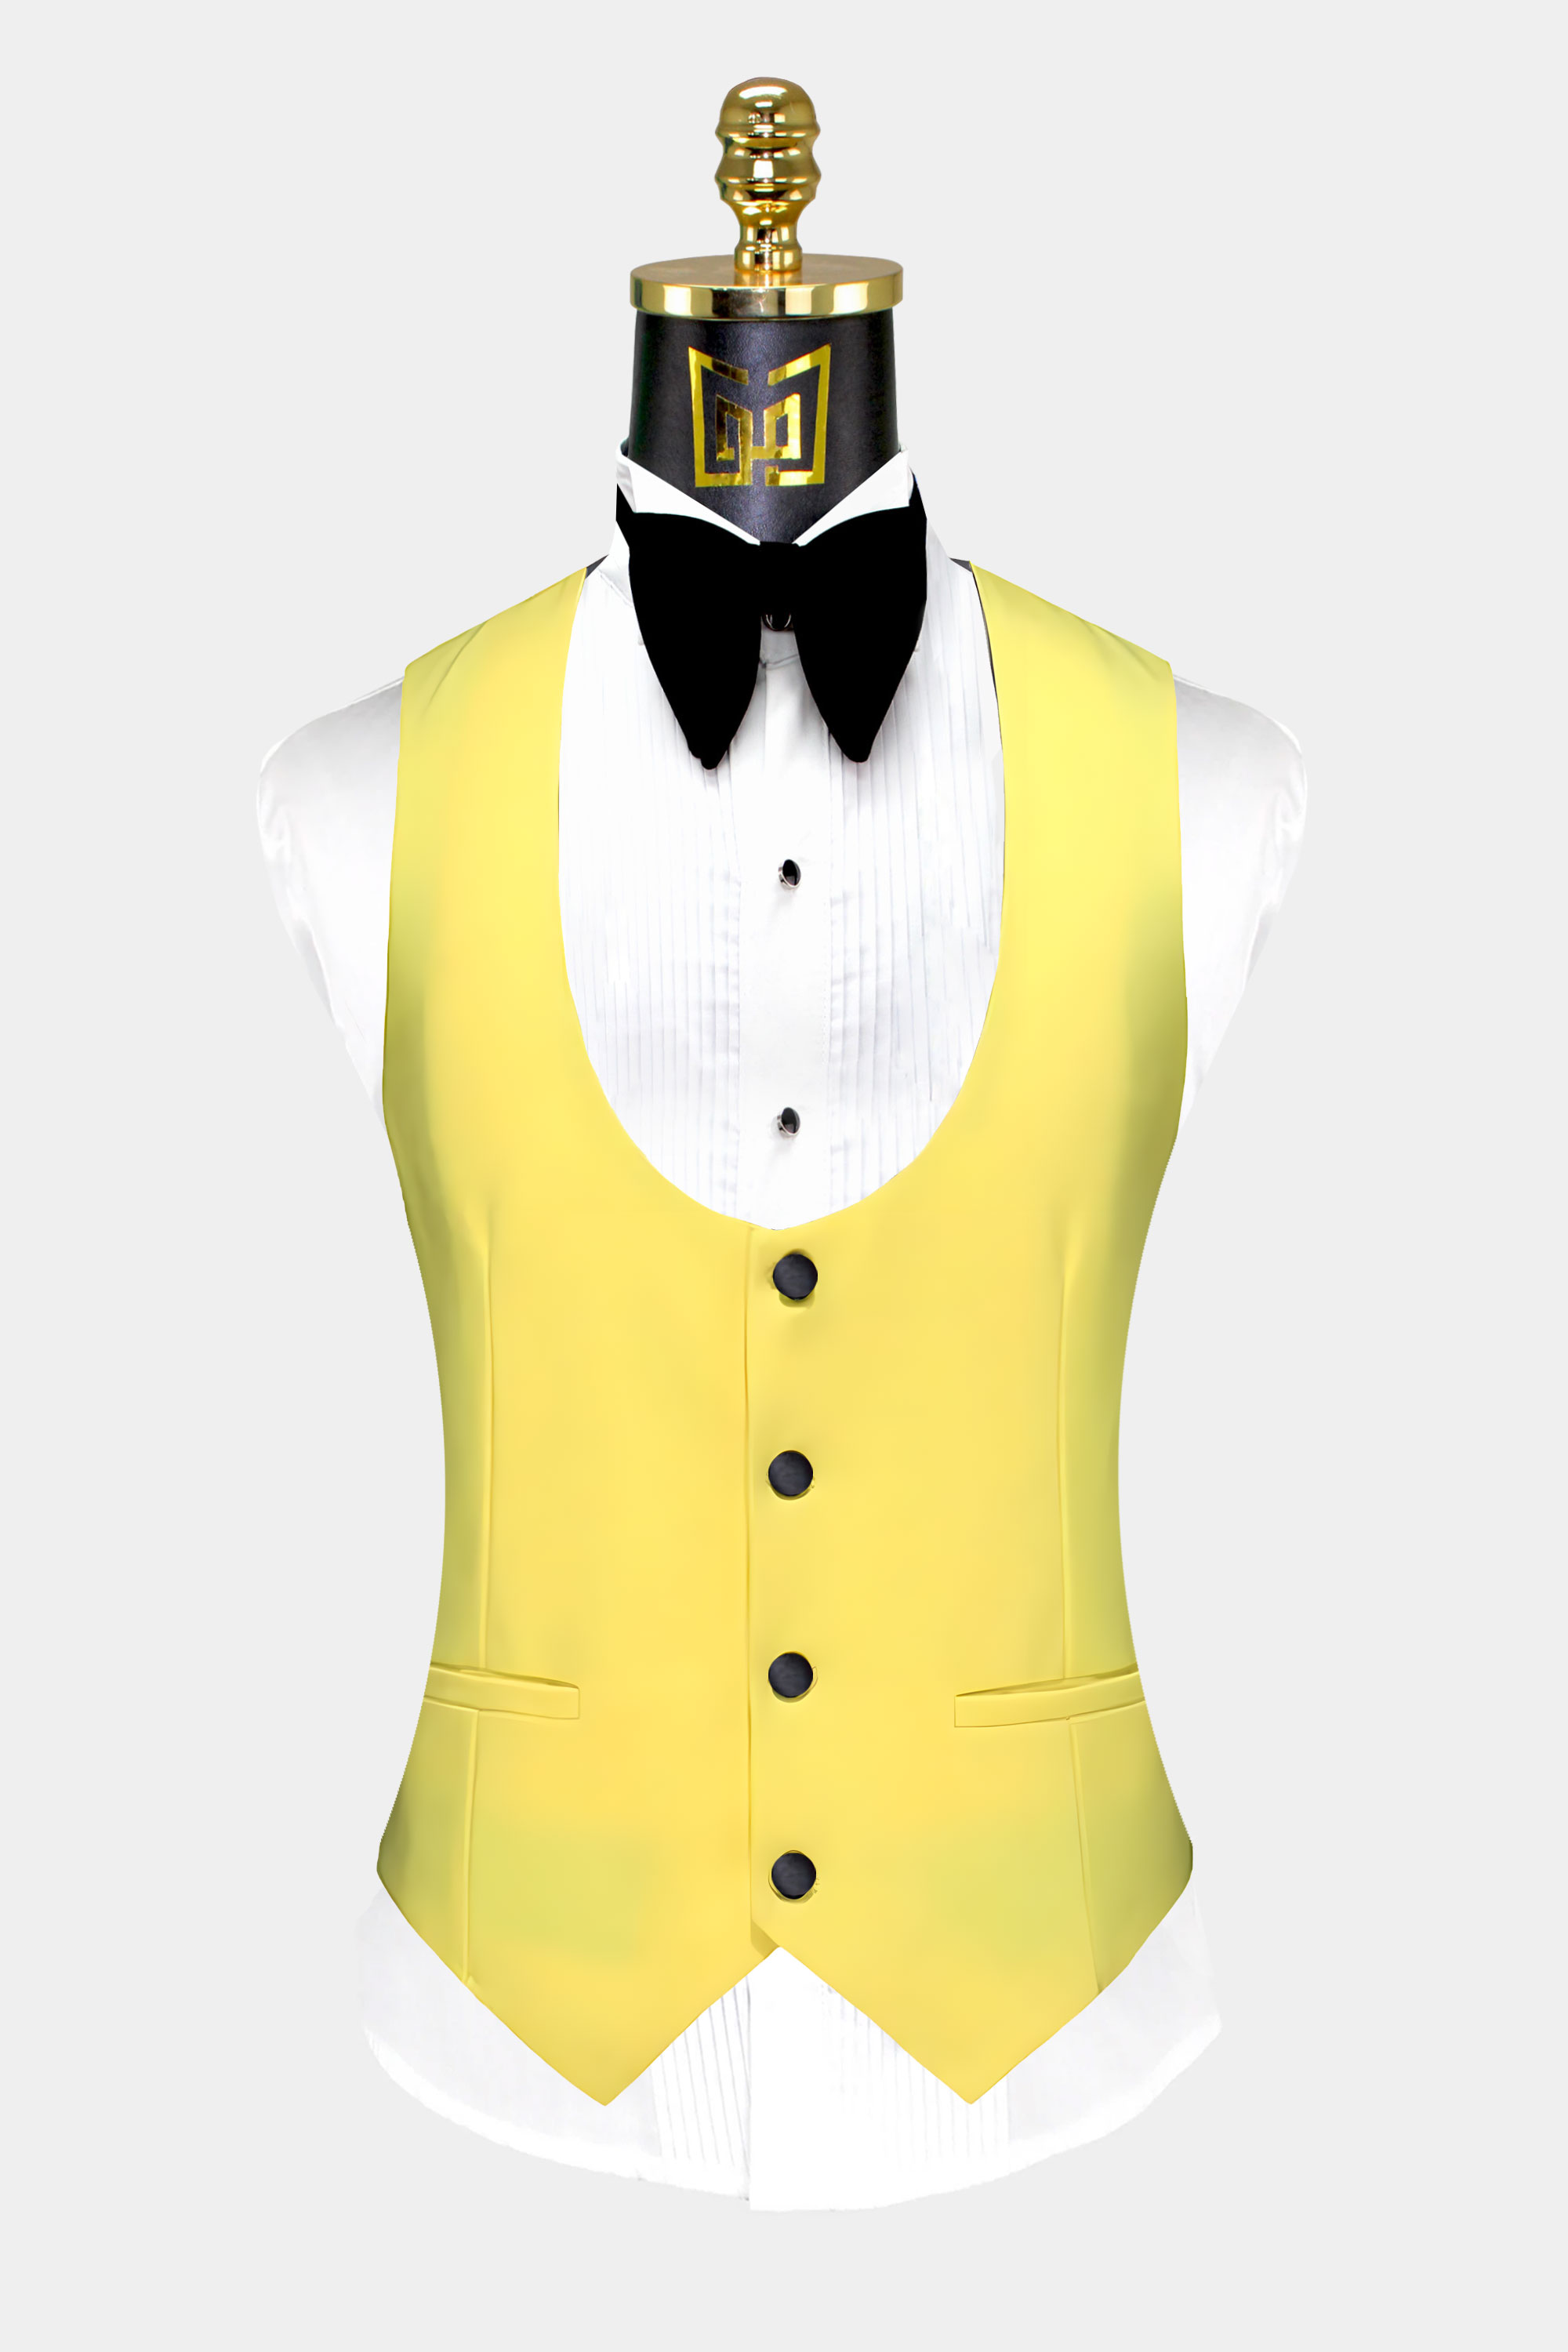 Yellow-Tuxedo-Vest-Waistcoat-from-Gentlemansguru.com